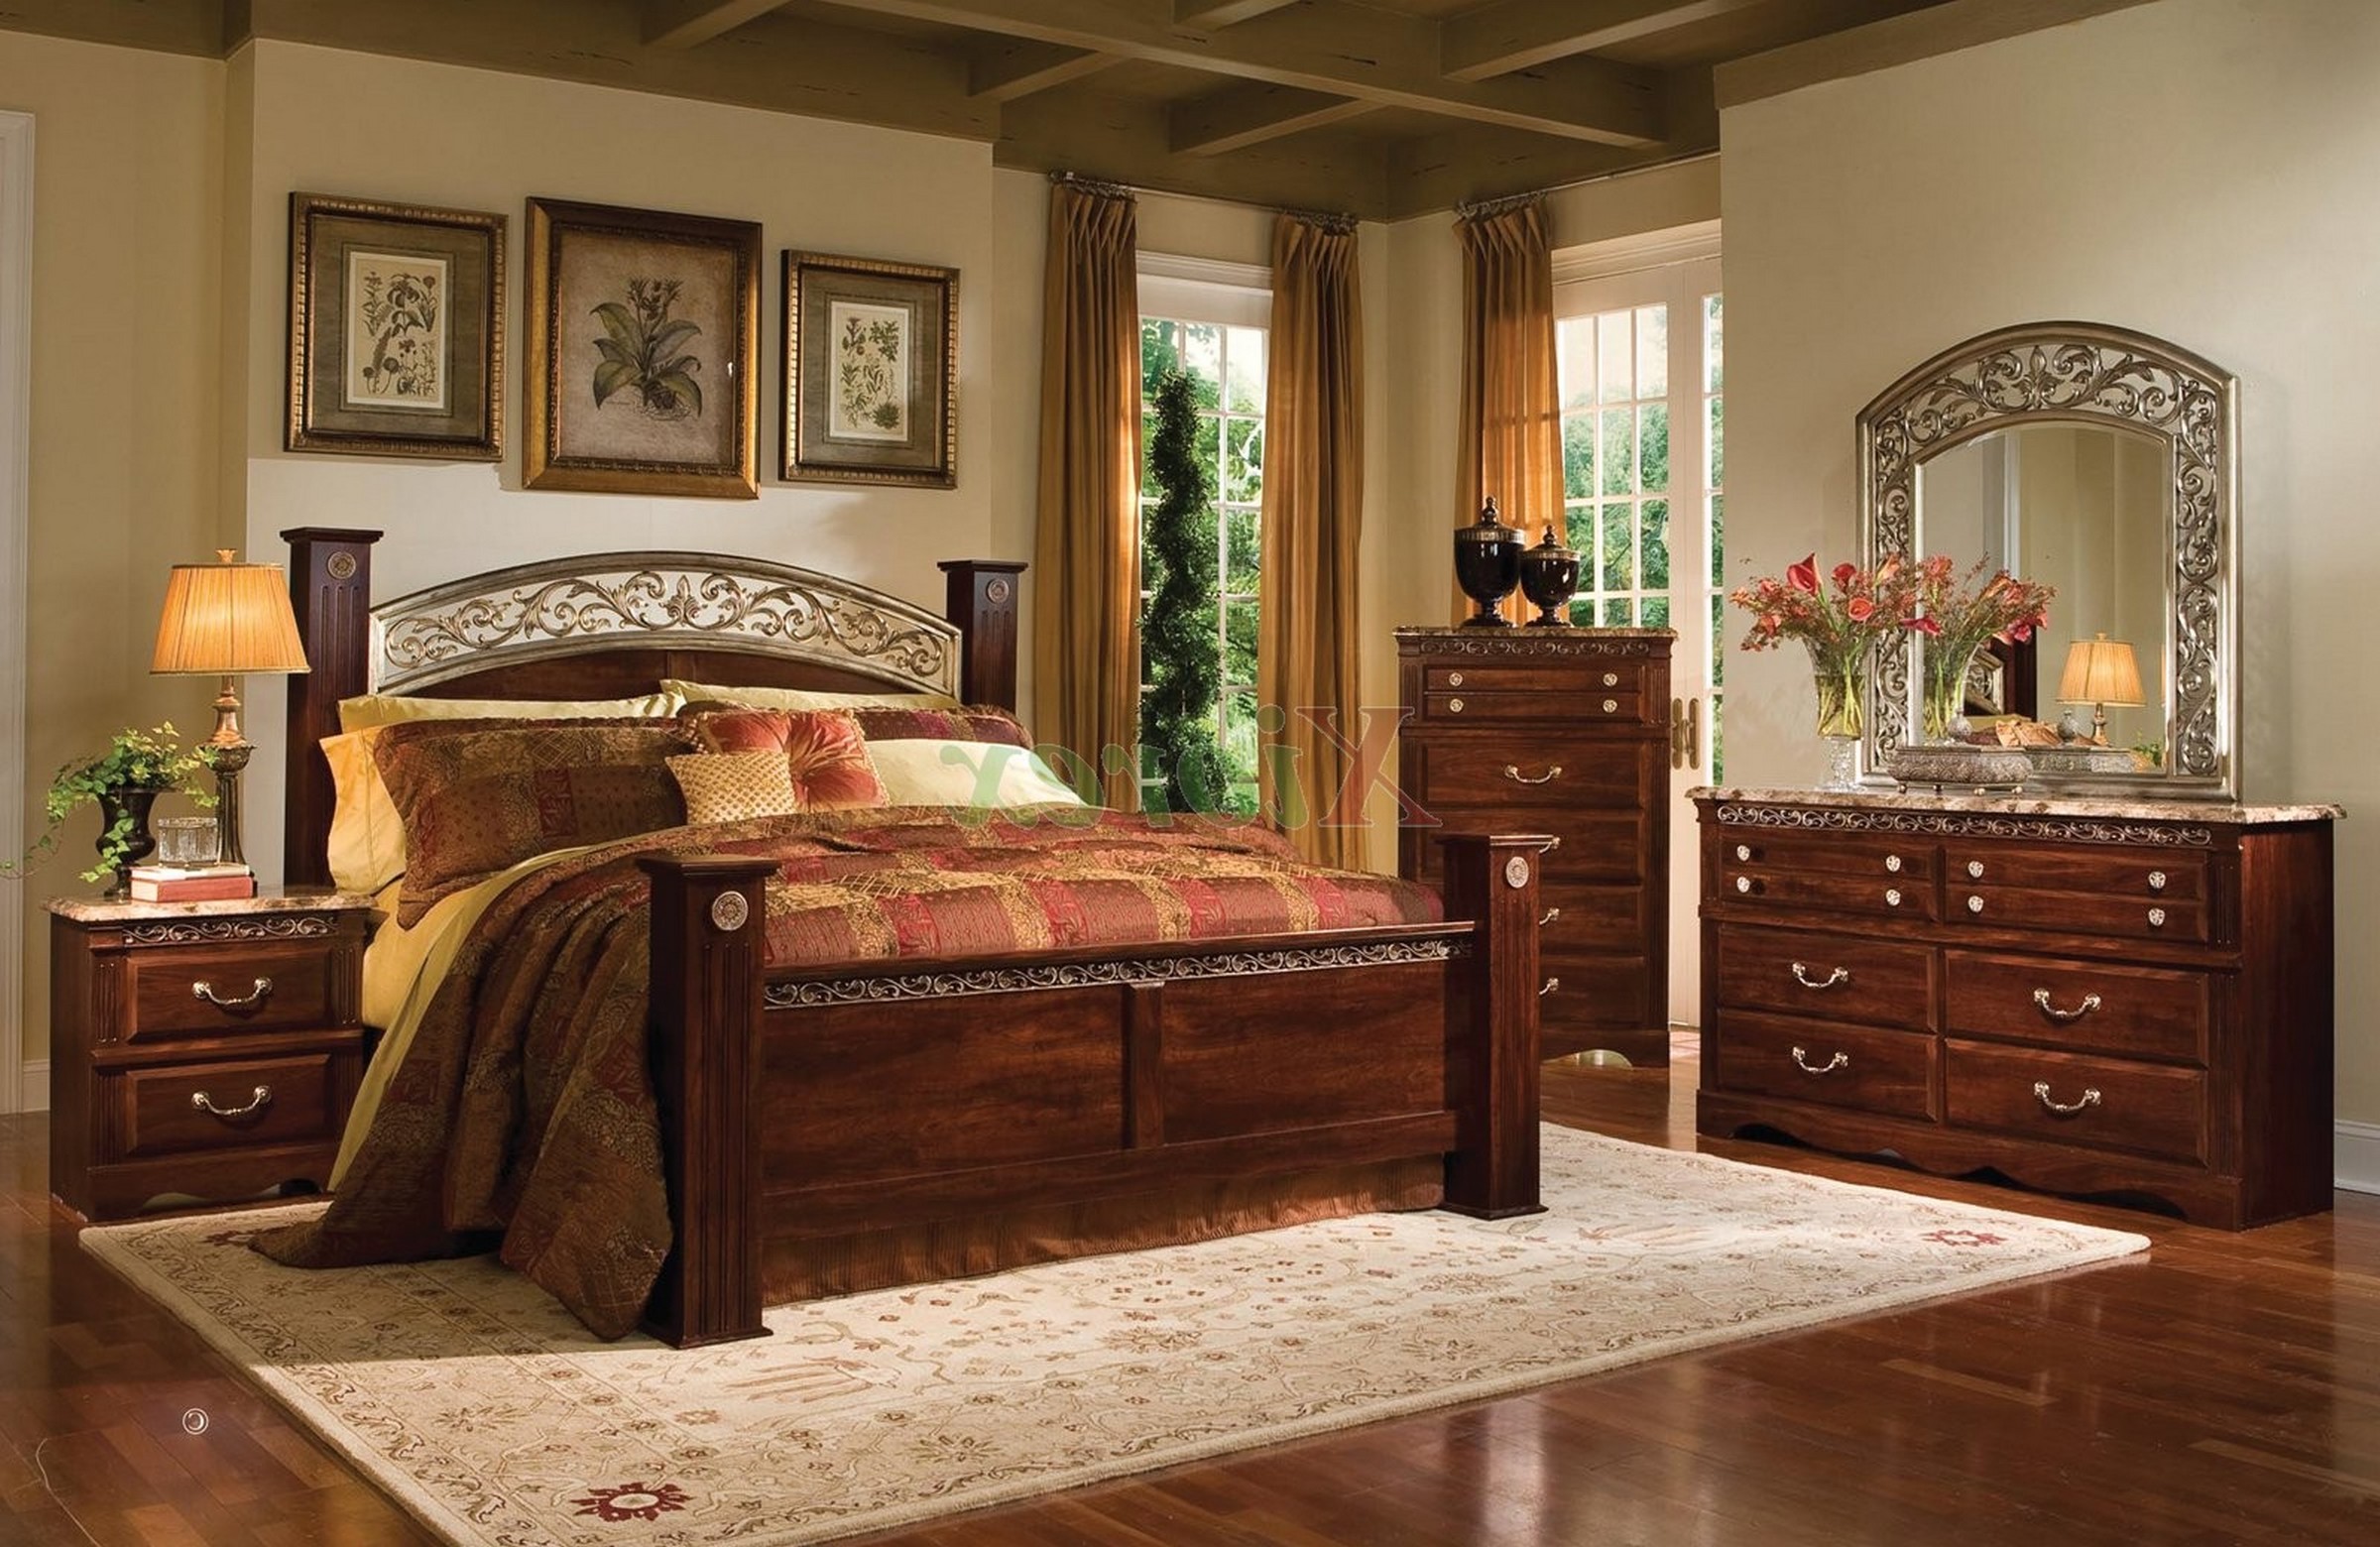 oak and black bedroom furniture